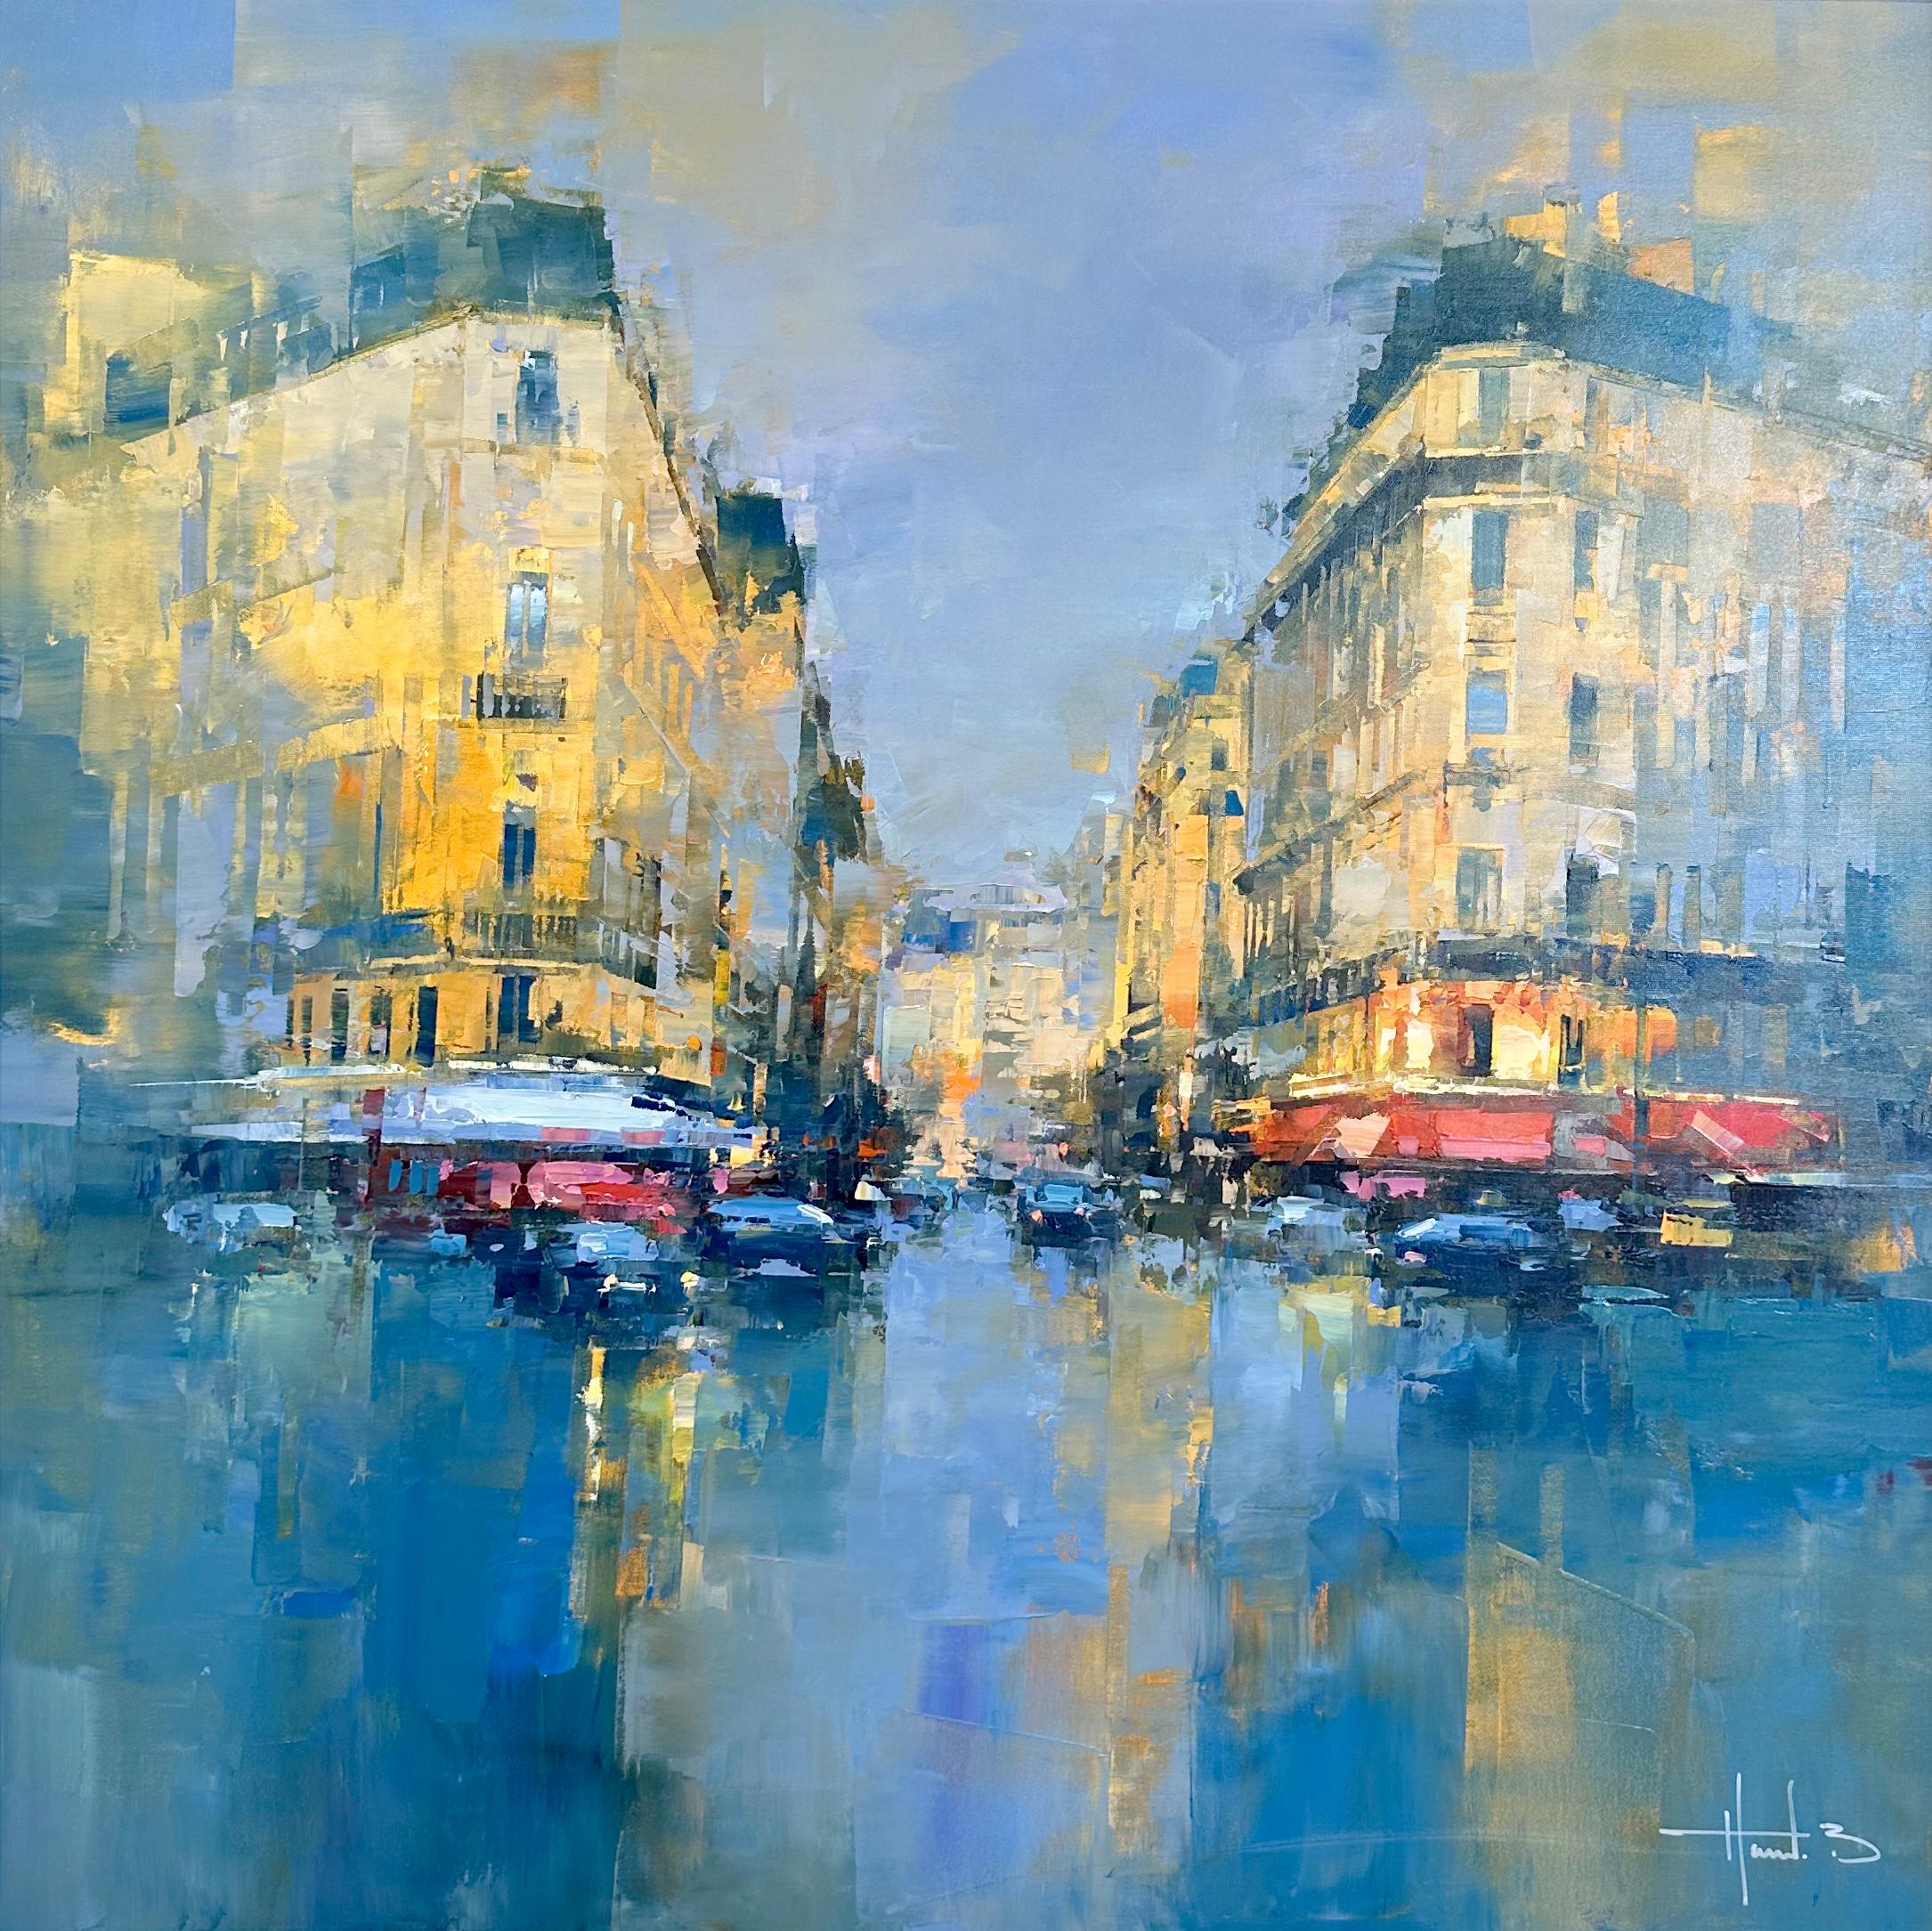 Havard Benoit, "Downtown Paris" Urban City Landscape Oil Painting on Canvas